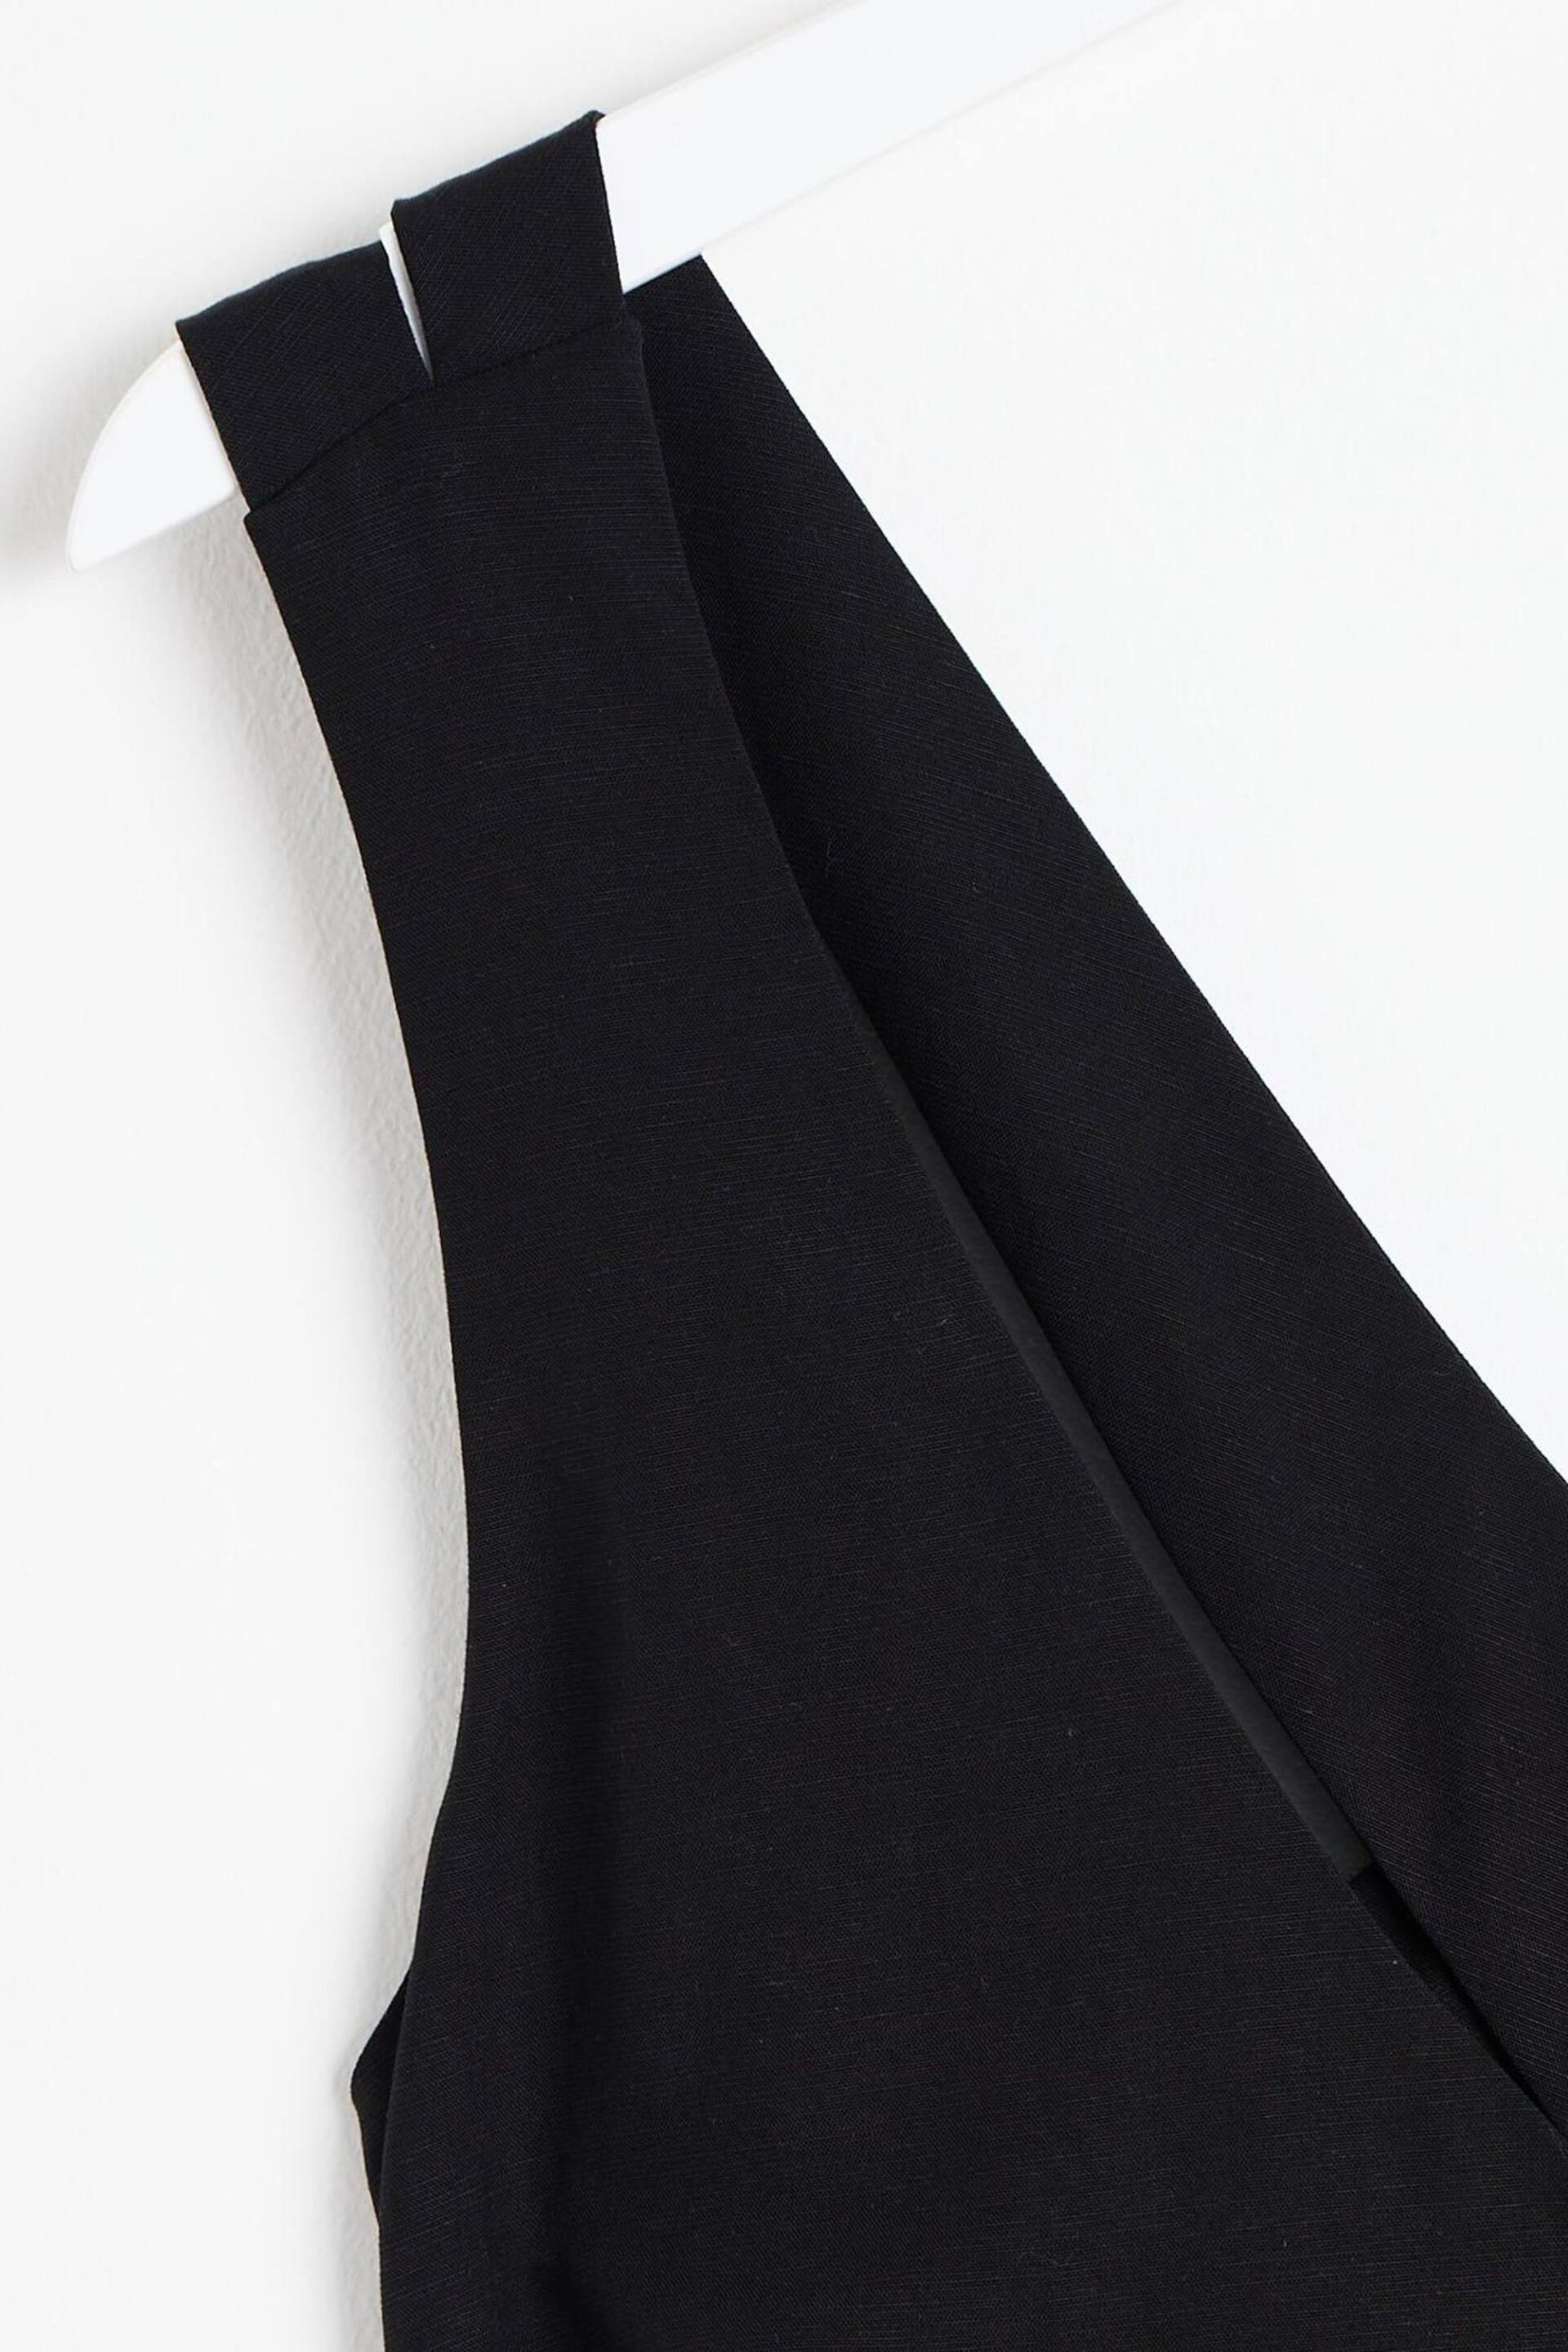 Oliver Bonas Belted Sleeveless Black Jumpsuit - Image 6 of 6